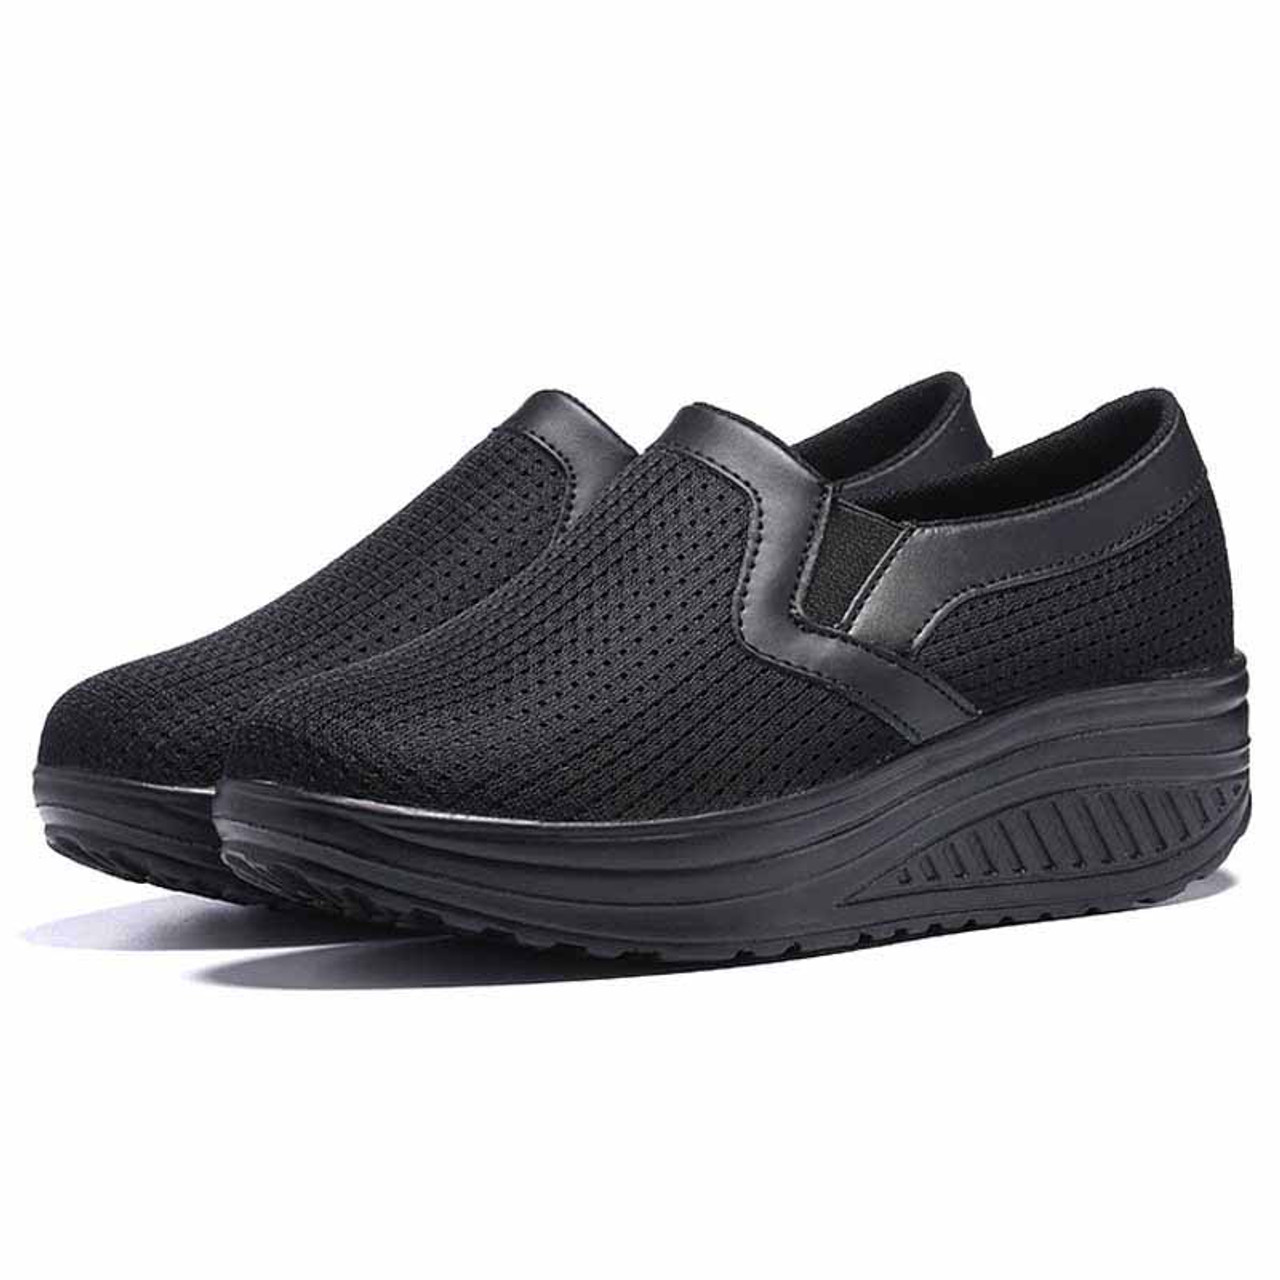 Black plain slip on rocker bottom shoe sneaker | Womens rocker shoes ...